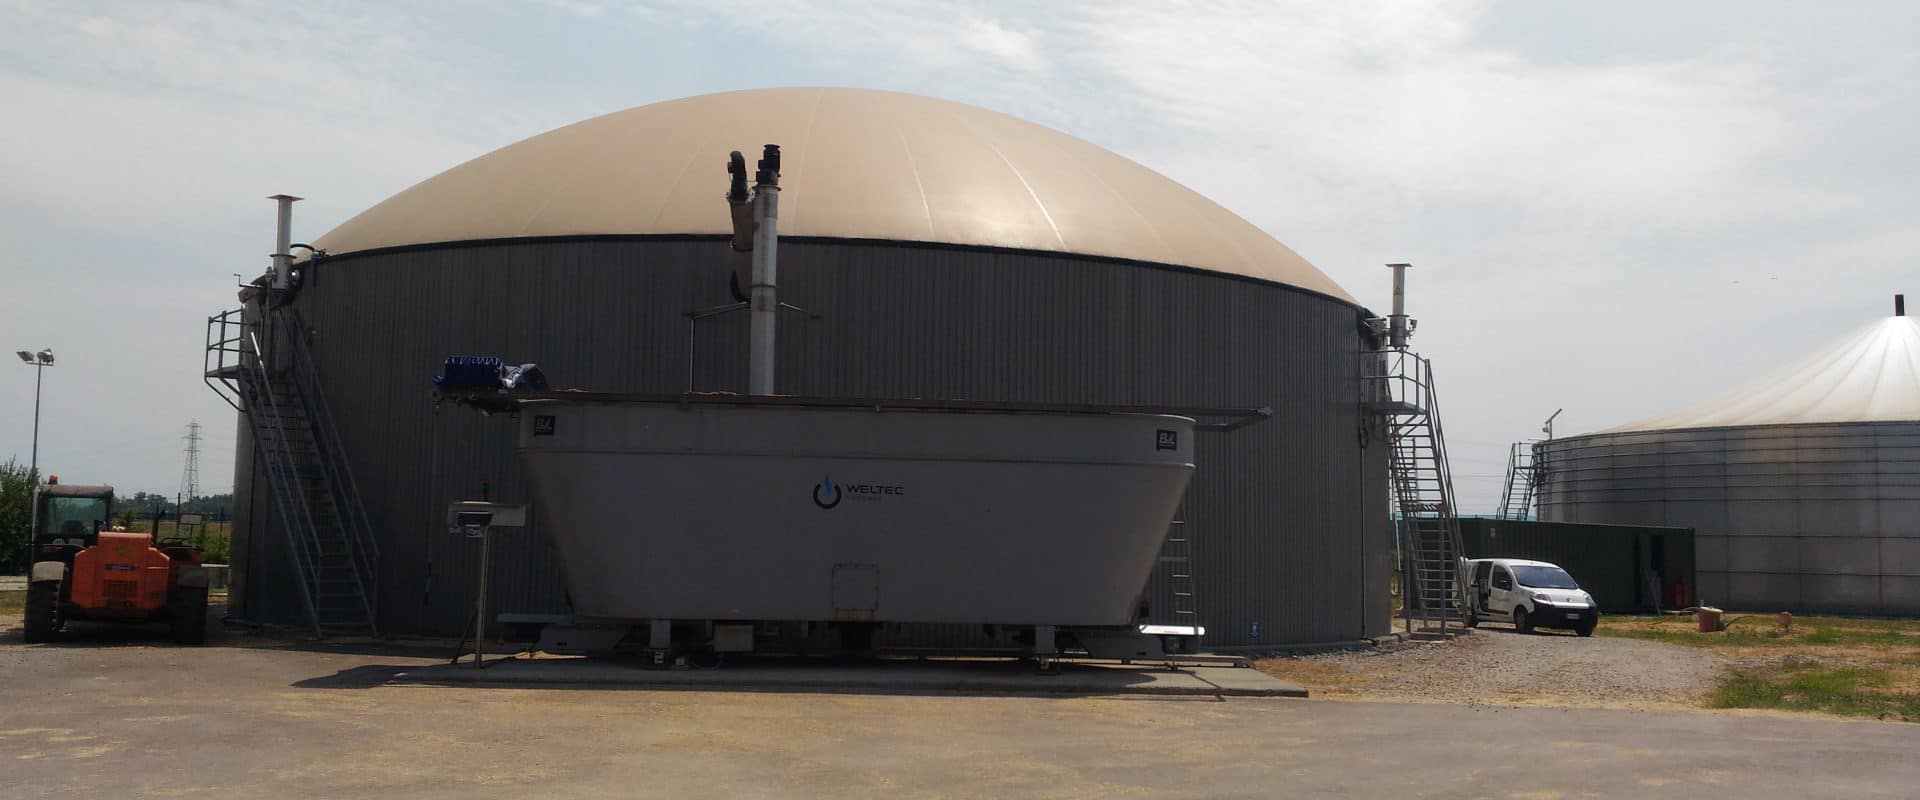 gestione, manutenzione impianti biogas